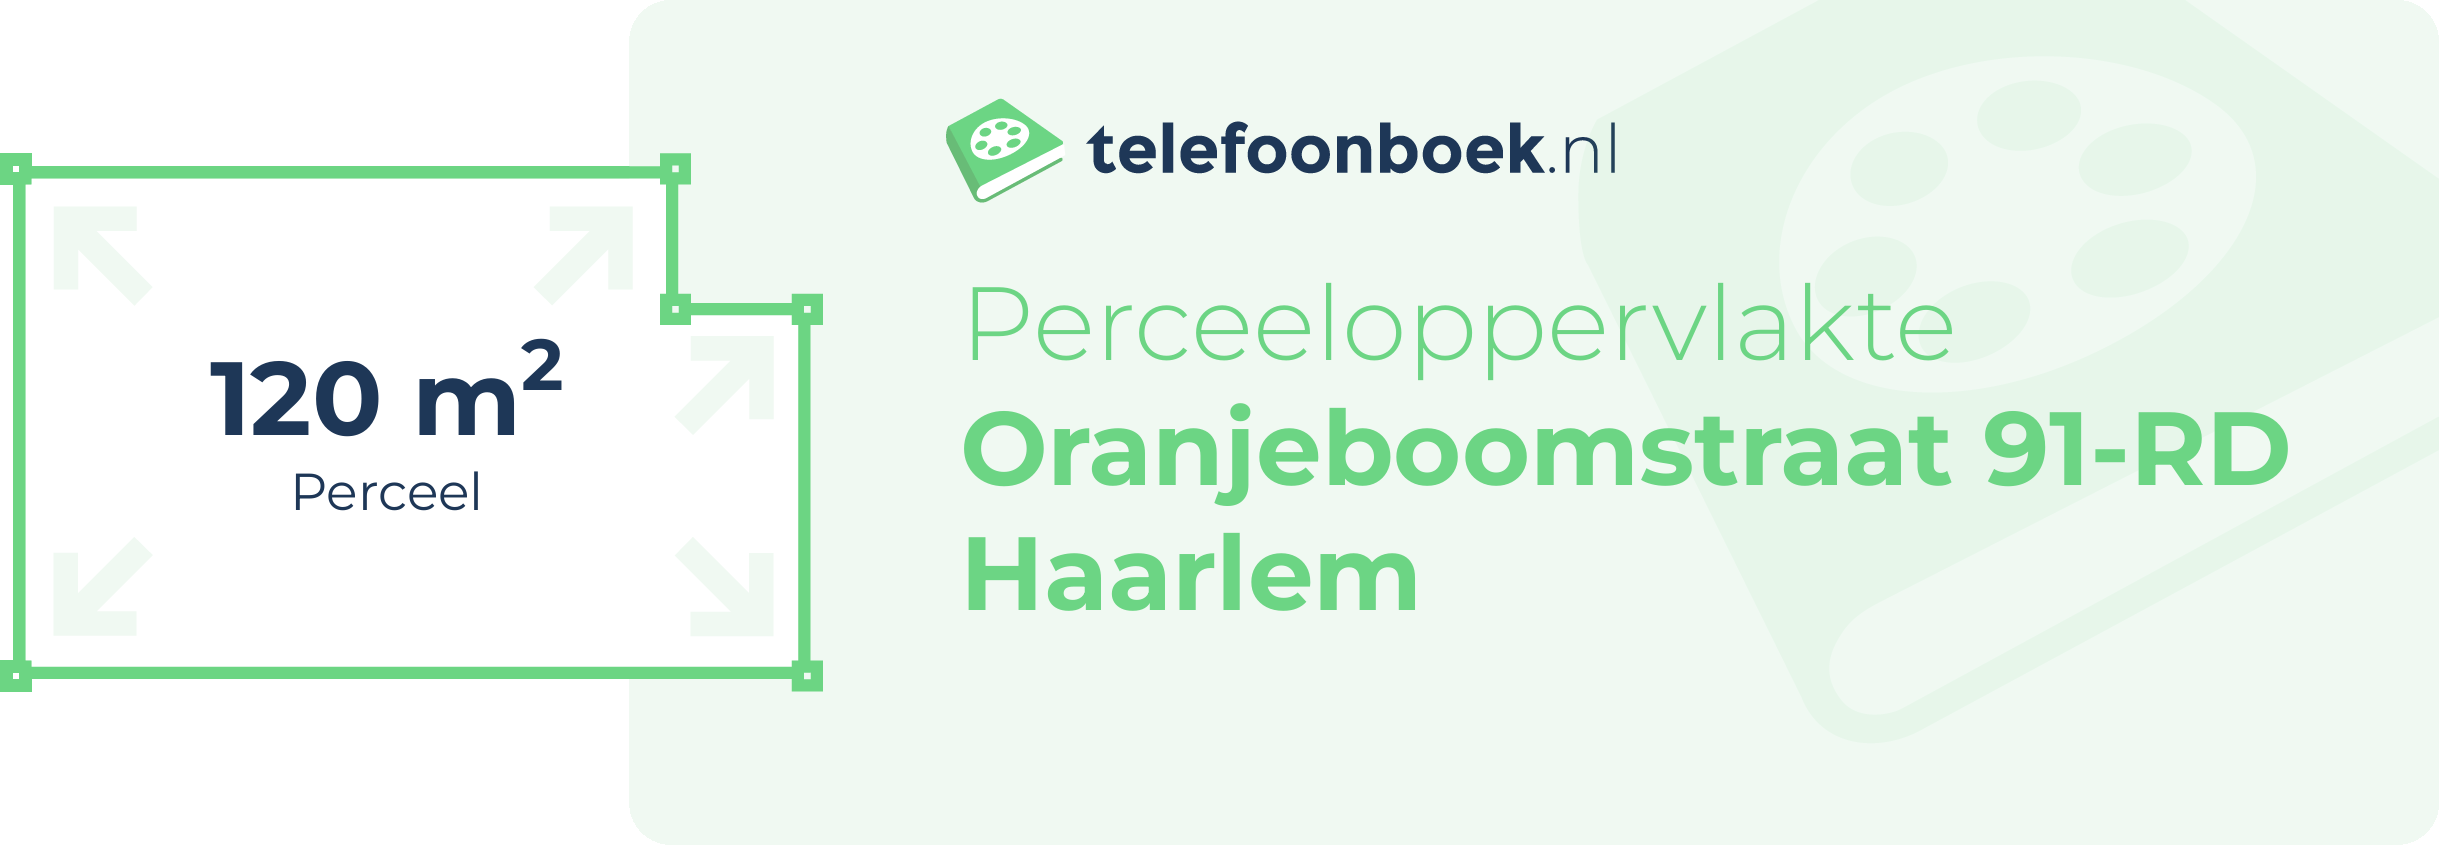 Perceeloppervlakte Oranjeboomstraat 91-RD Haarlem